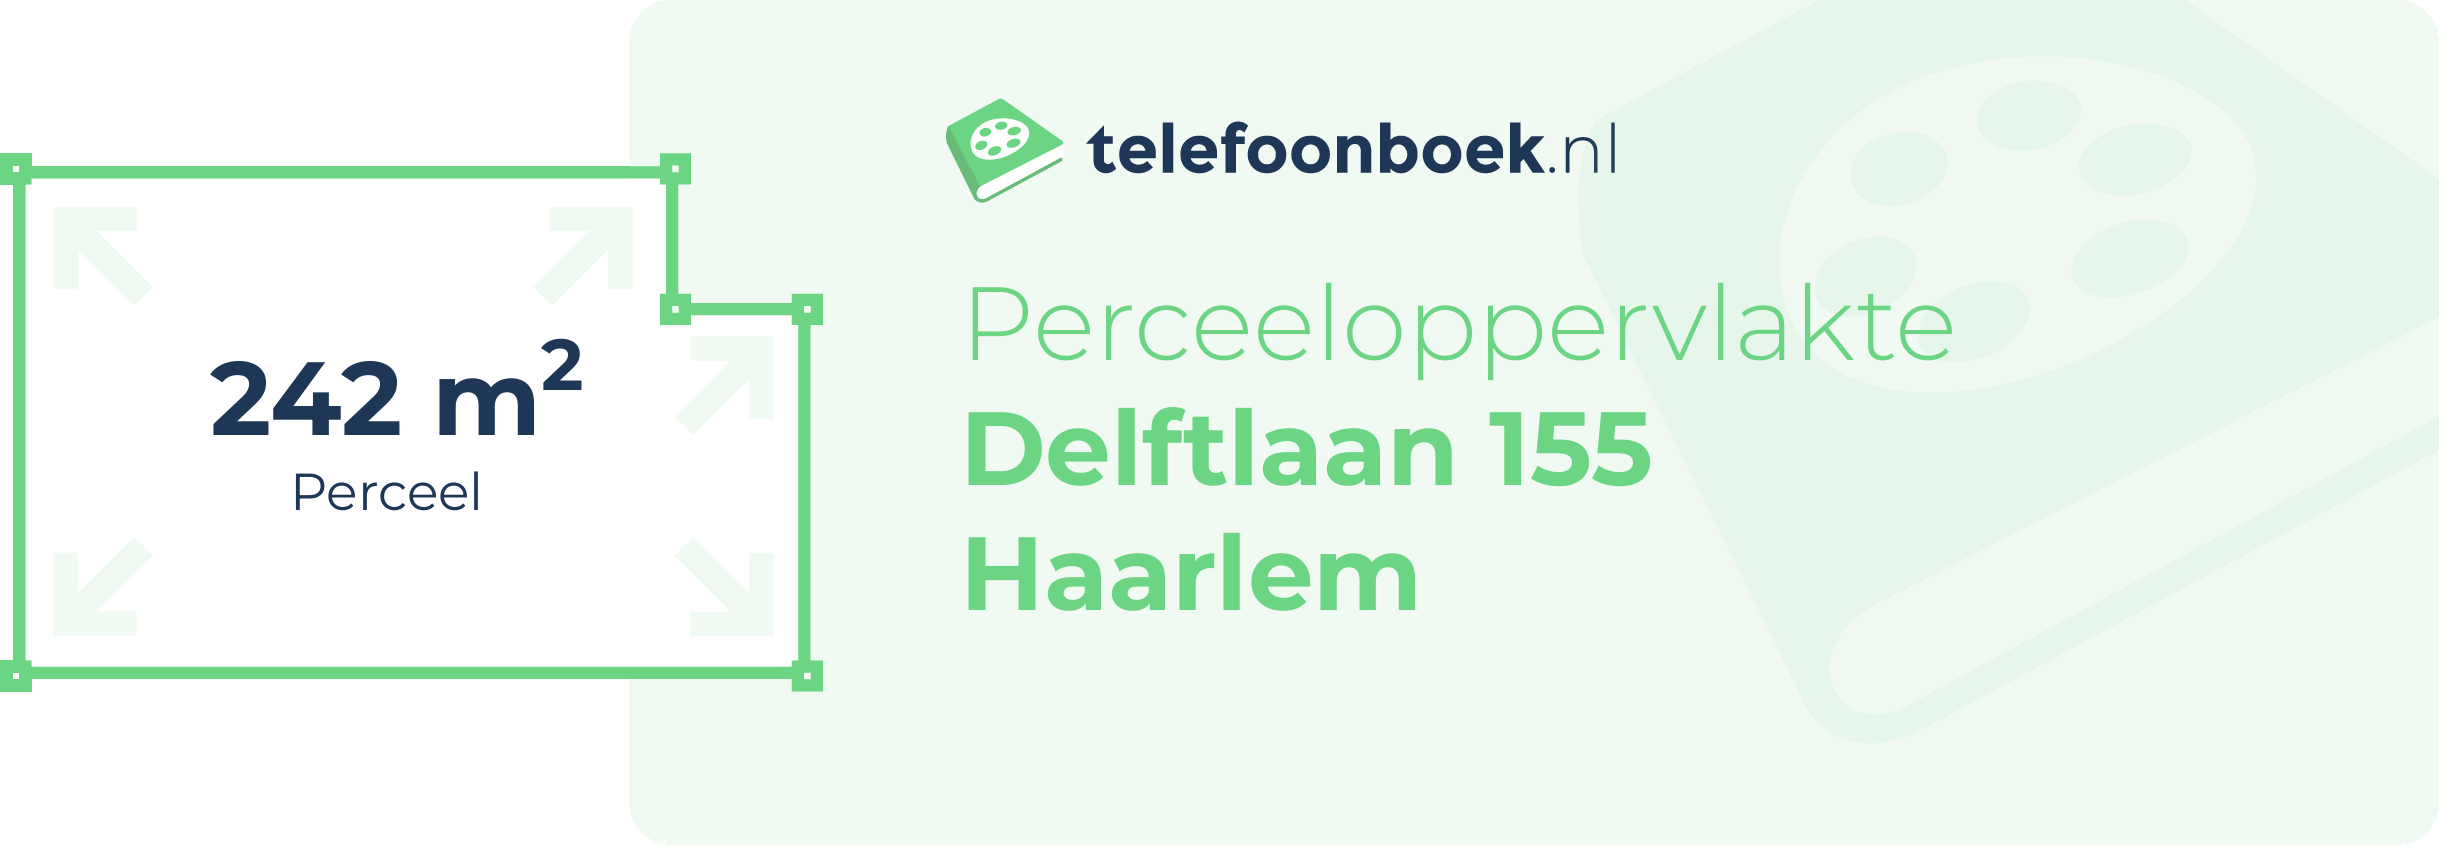 Perceeloppervlakte Delftlaan 155 Haarlem